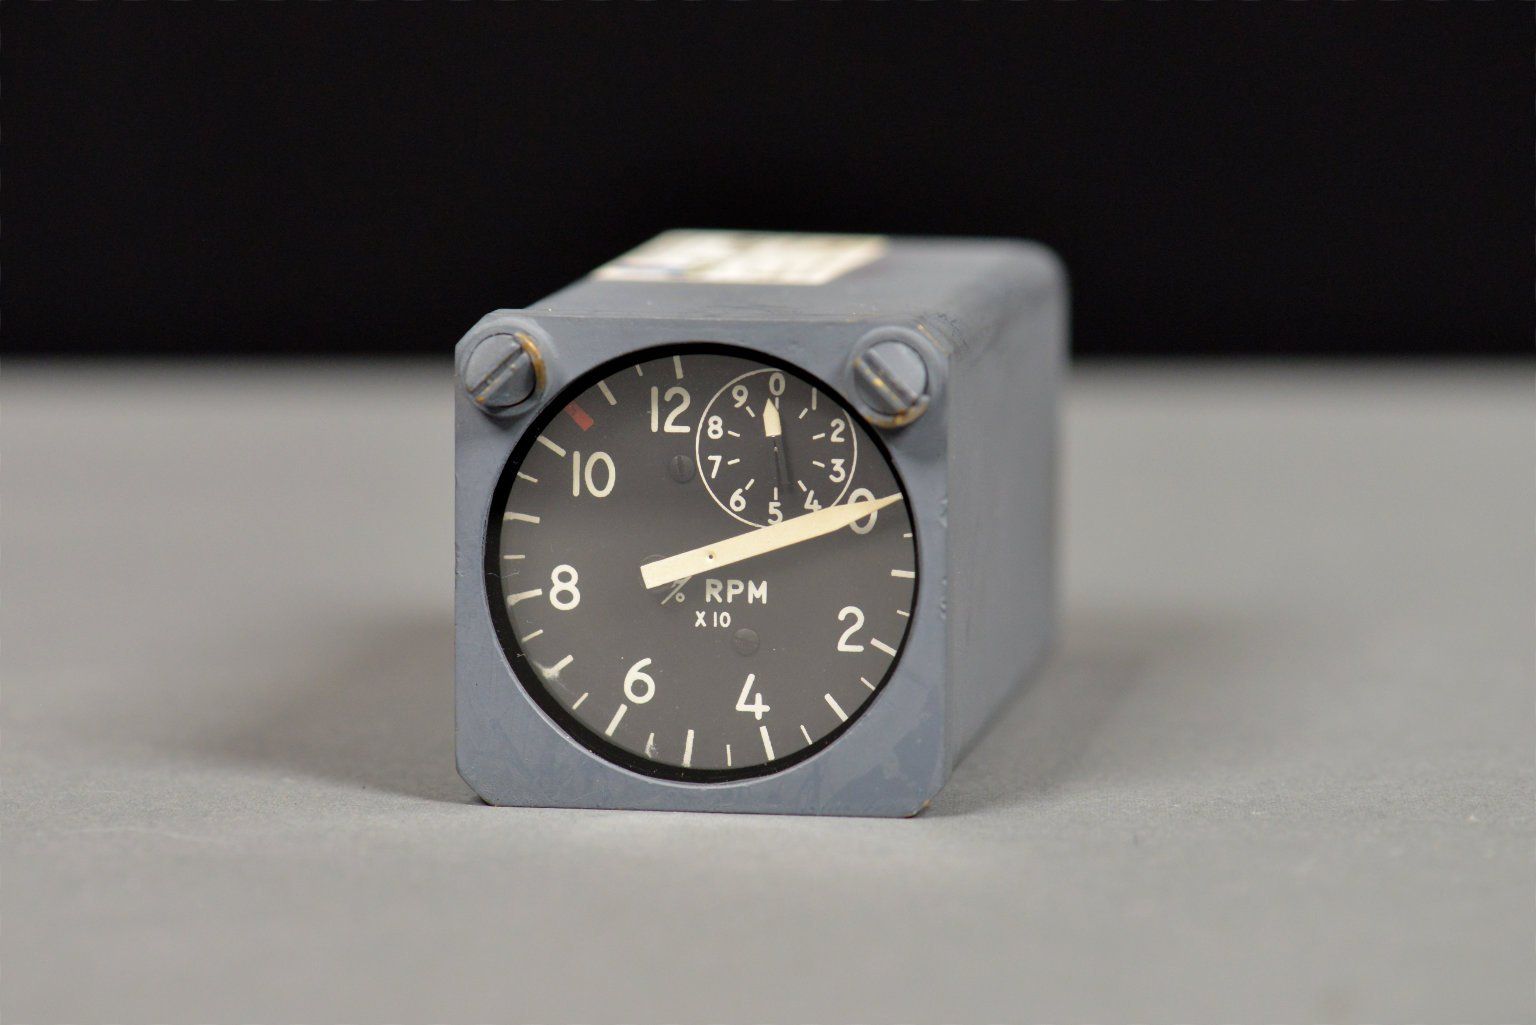 Khéo tay hay mò, modder biến đồng hồ đo tốc độ máy bay thành đồng hồ đo hiệu năng CPU